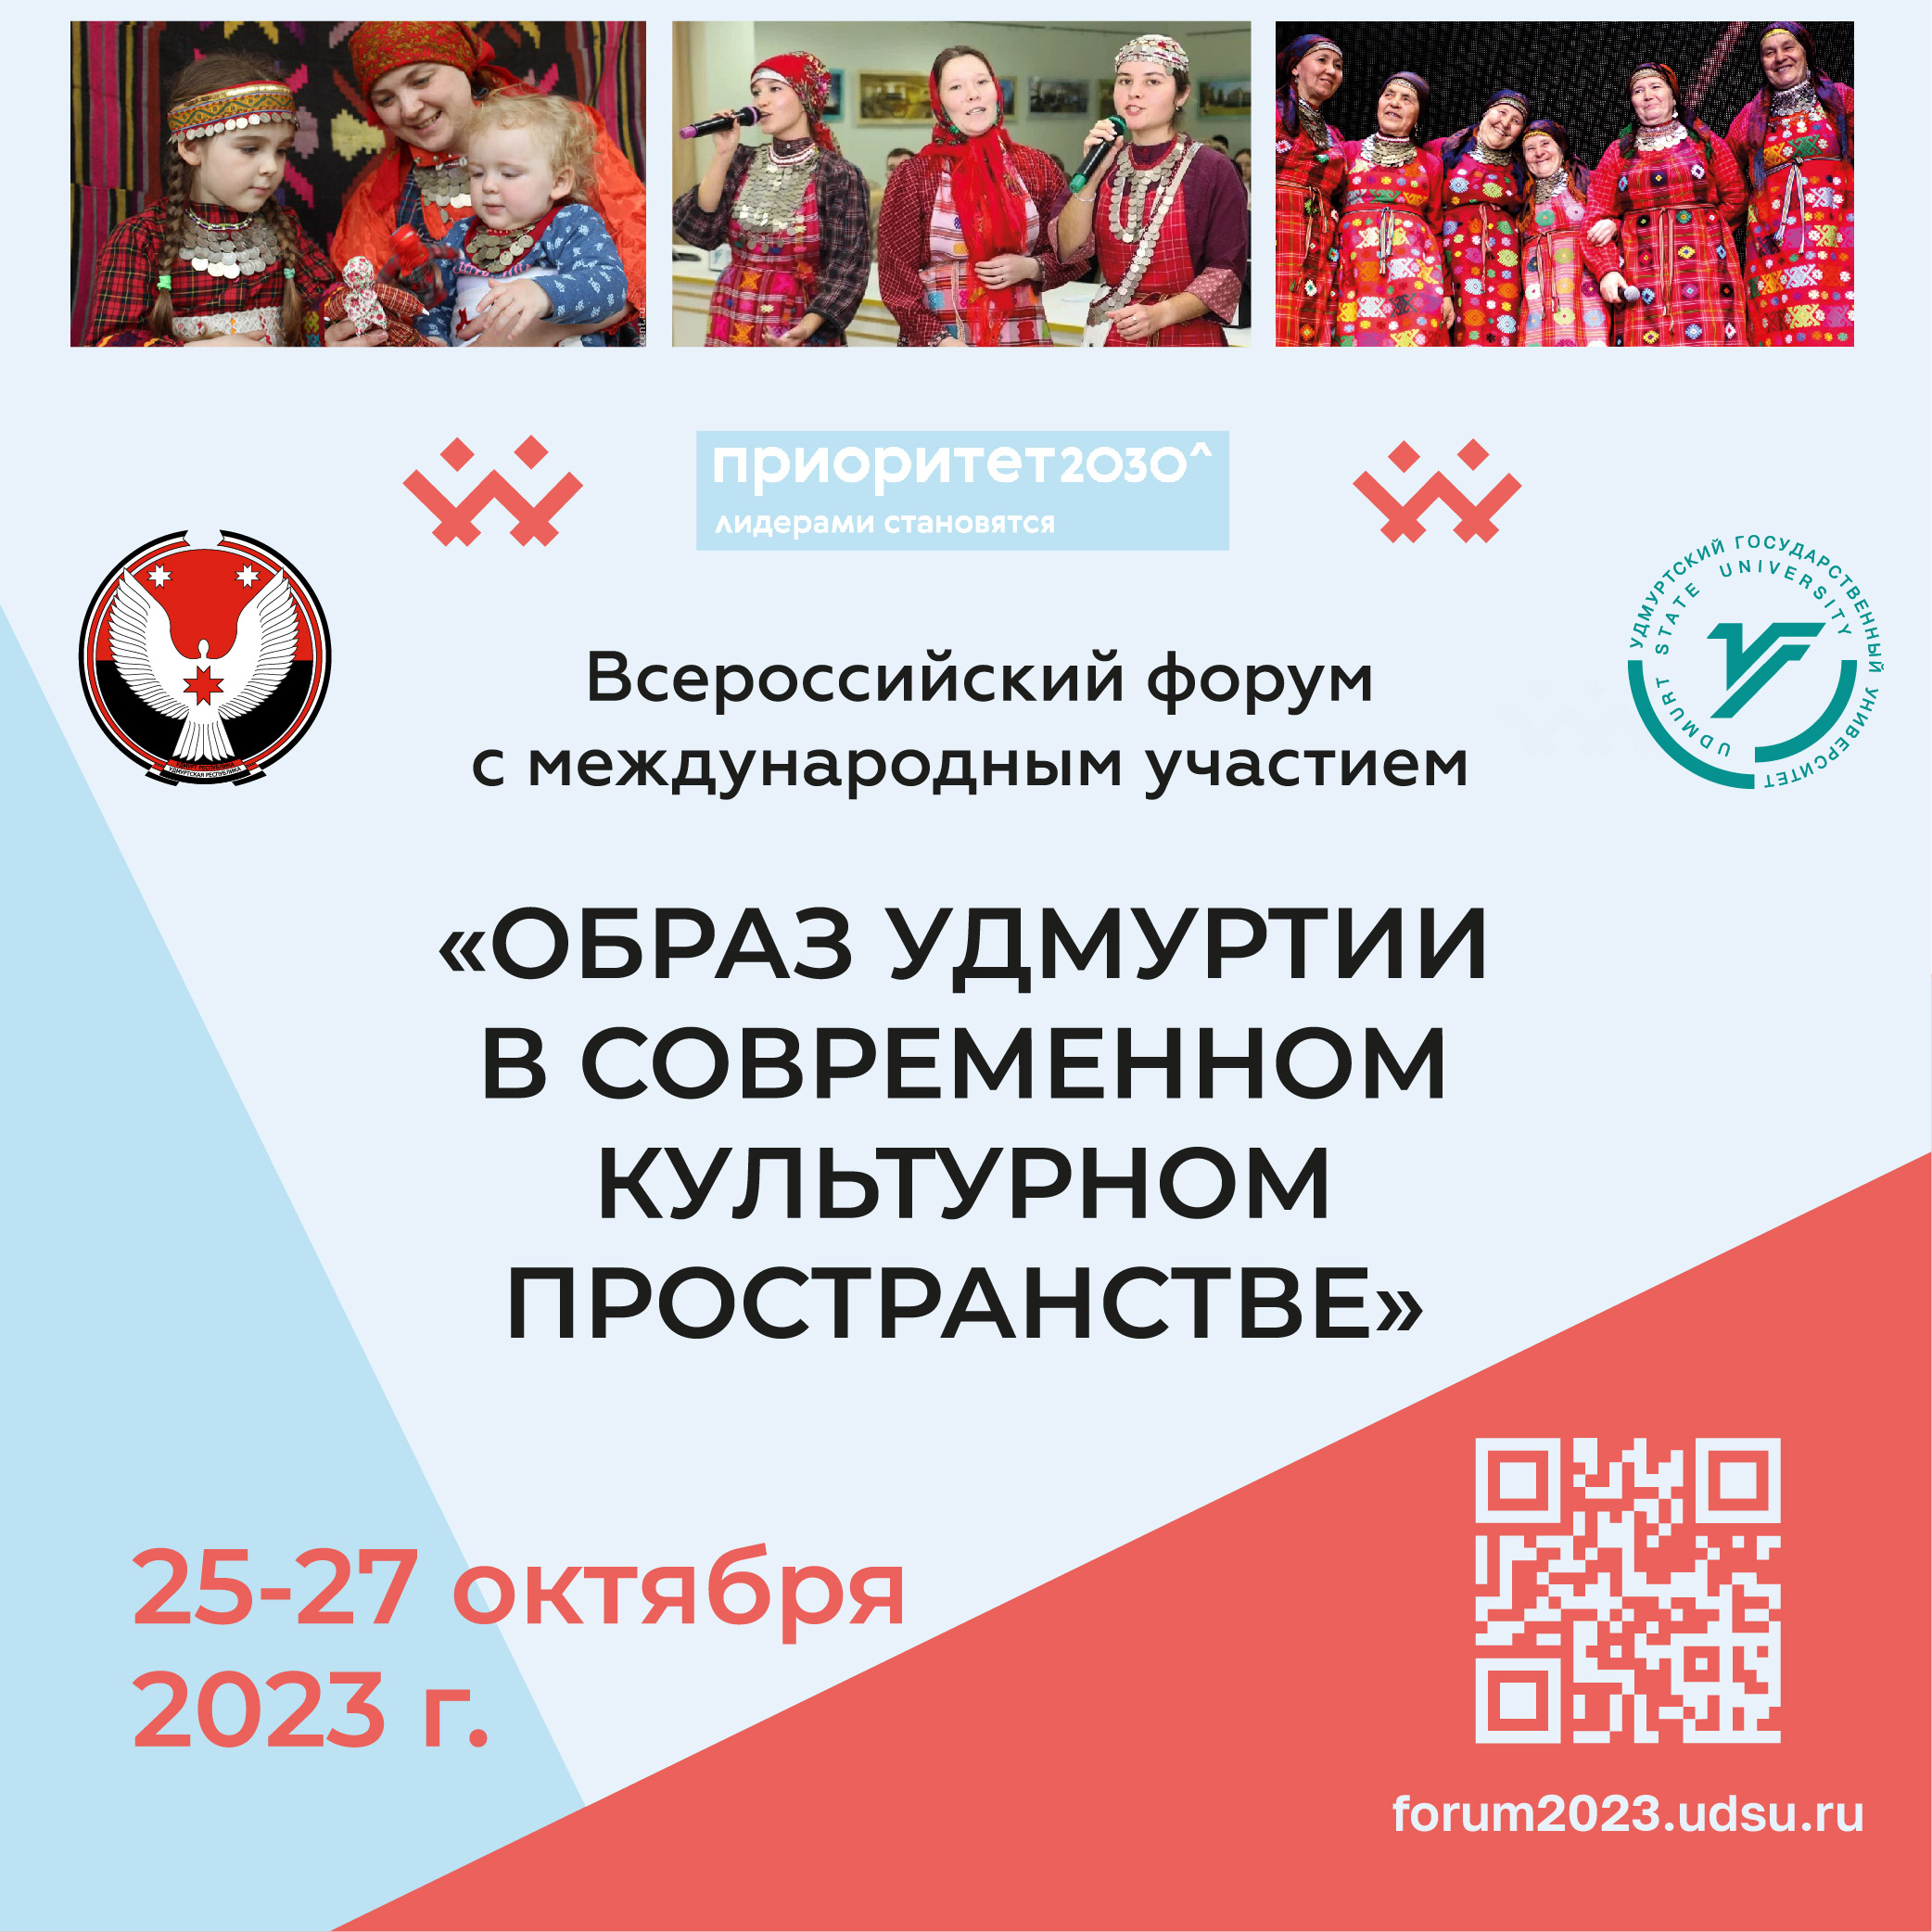 В Ижевске пройдет Всероссийский форум «Образ Удмуртии в современном культурном пространстве»